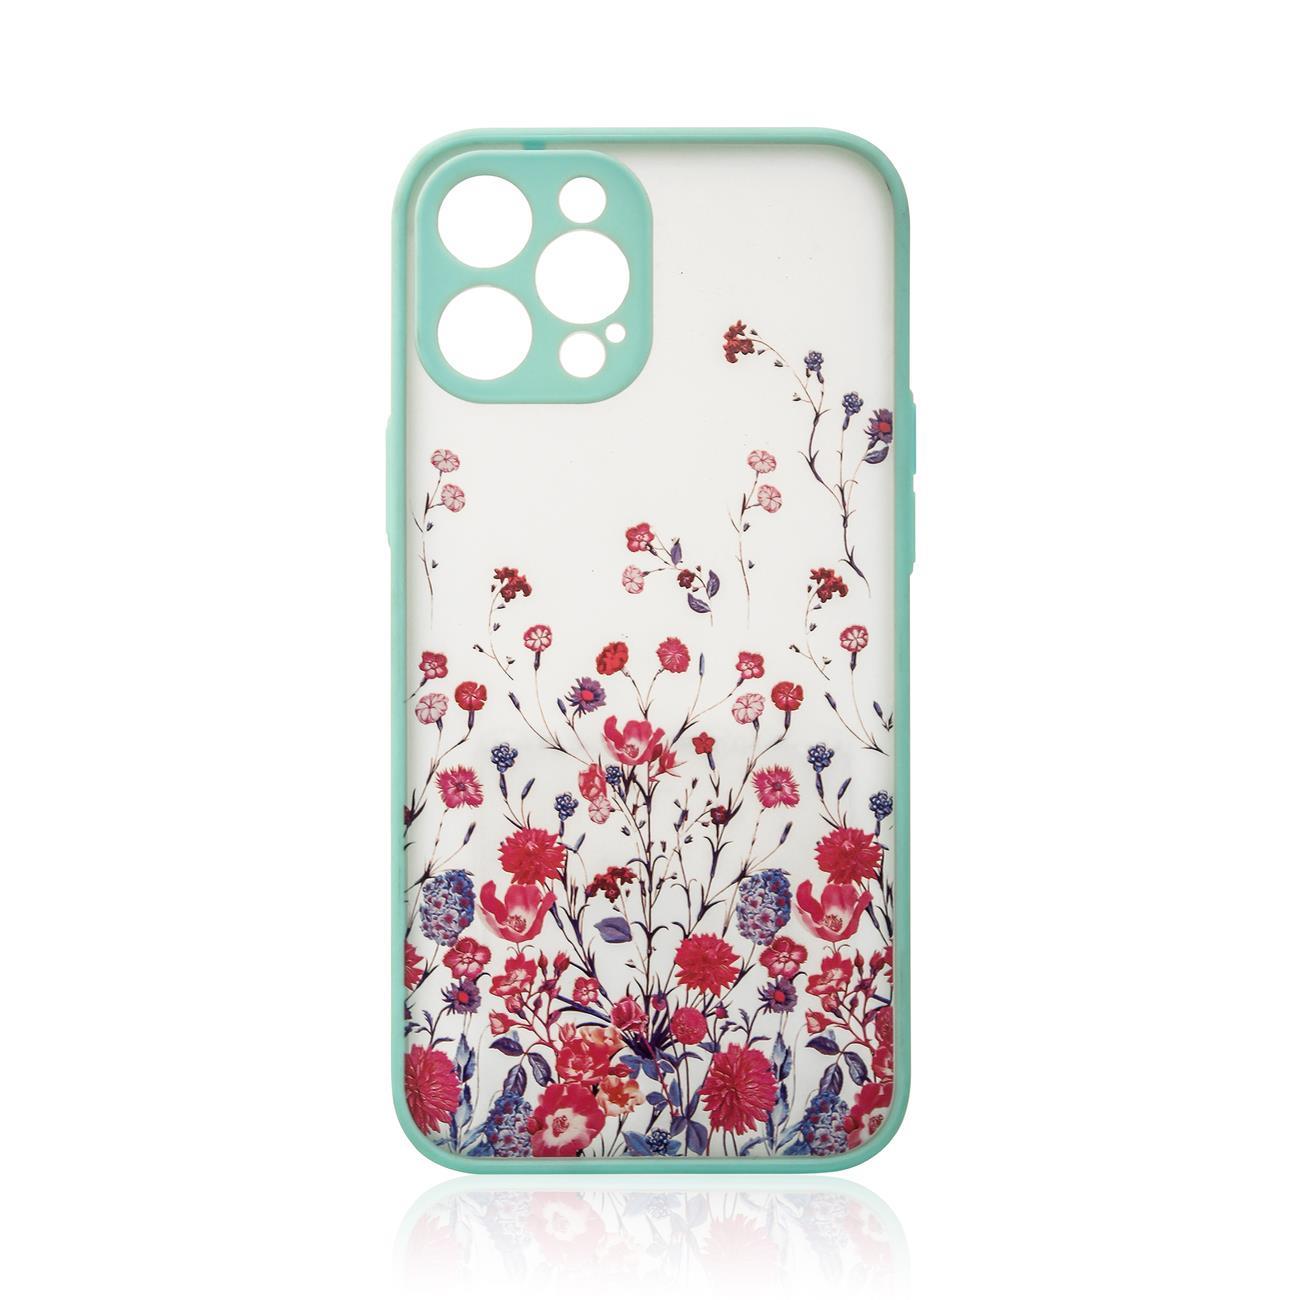 Design Case etui do iPhone 12 pokrowiec w kwiaty jasnoniebieski